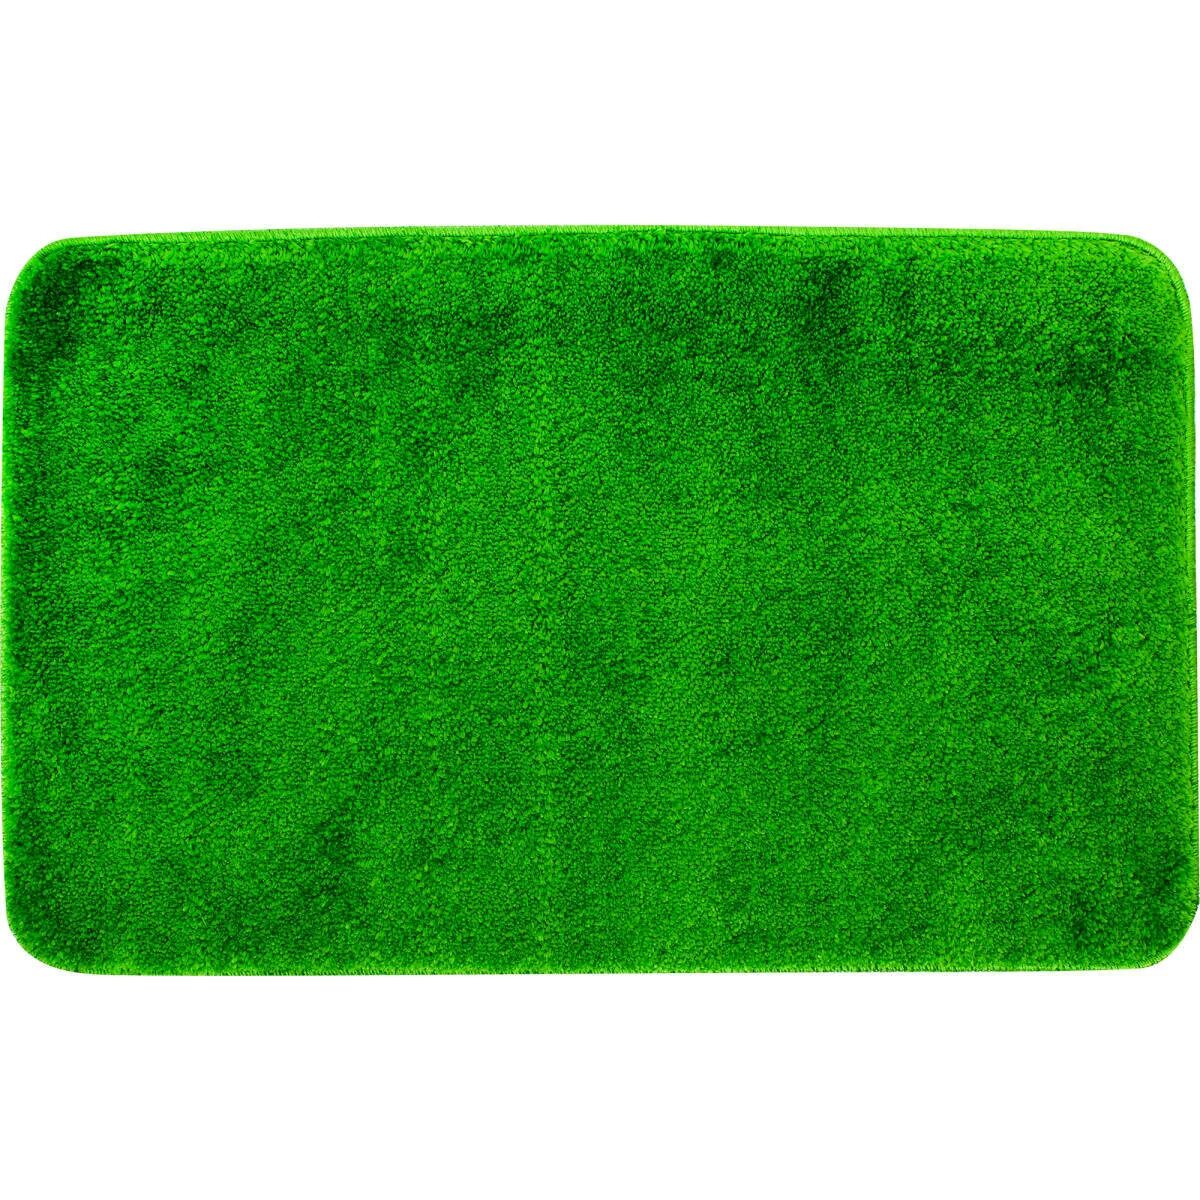 Коврик для ванной зеленый. Коврик для ванной комнаты зеленый. Коврик для ванной салатовый. Коврик для ванной седеный. Купить коврик зеленый